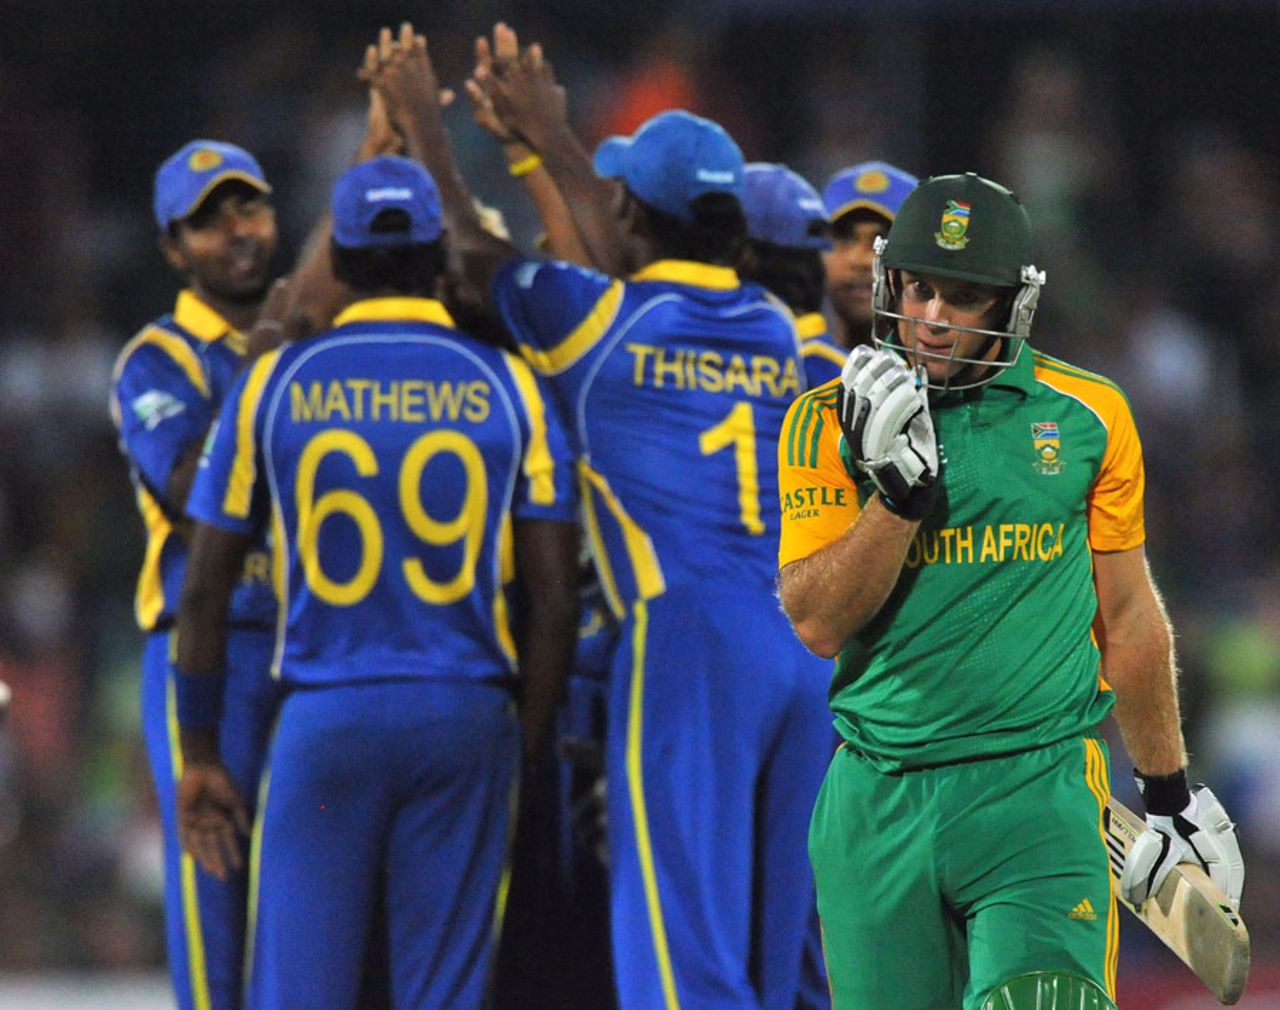 Colin Ingram departs after being dismissed for 13, South Africa v Sri Lanka, 3rd ODI, Bloemfontein, January 17, 2012